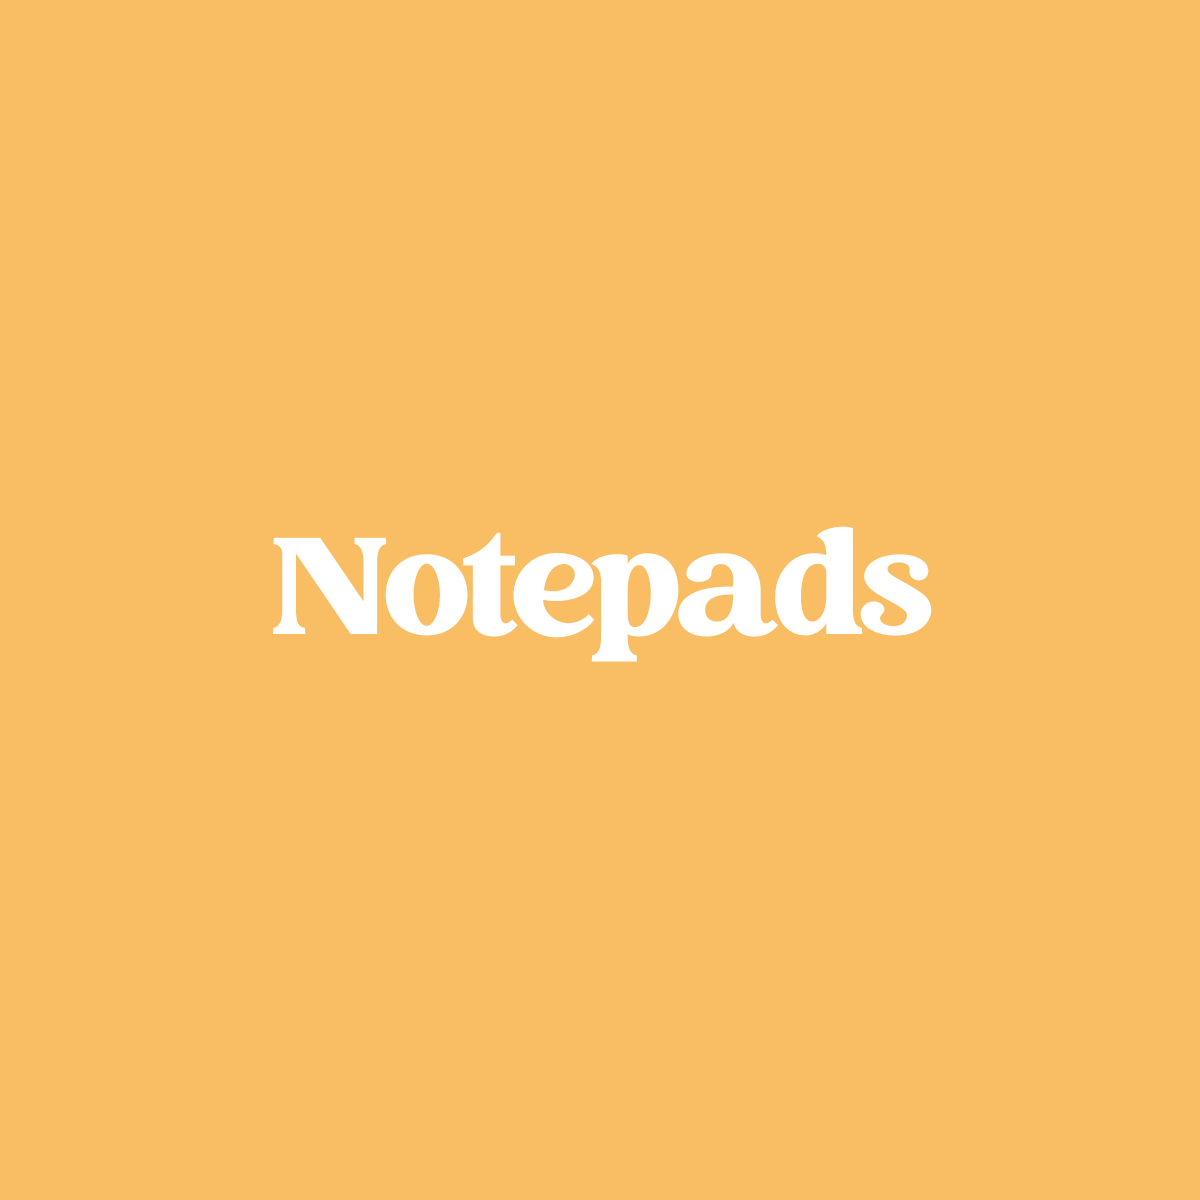 Notepads / Sticky Notes